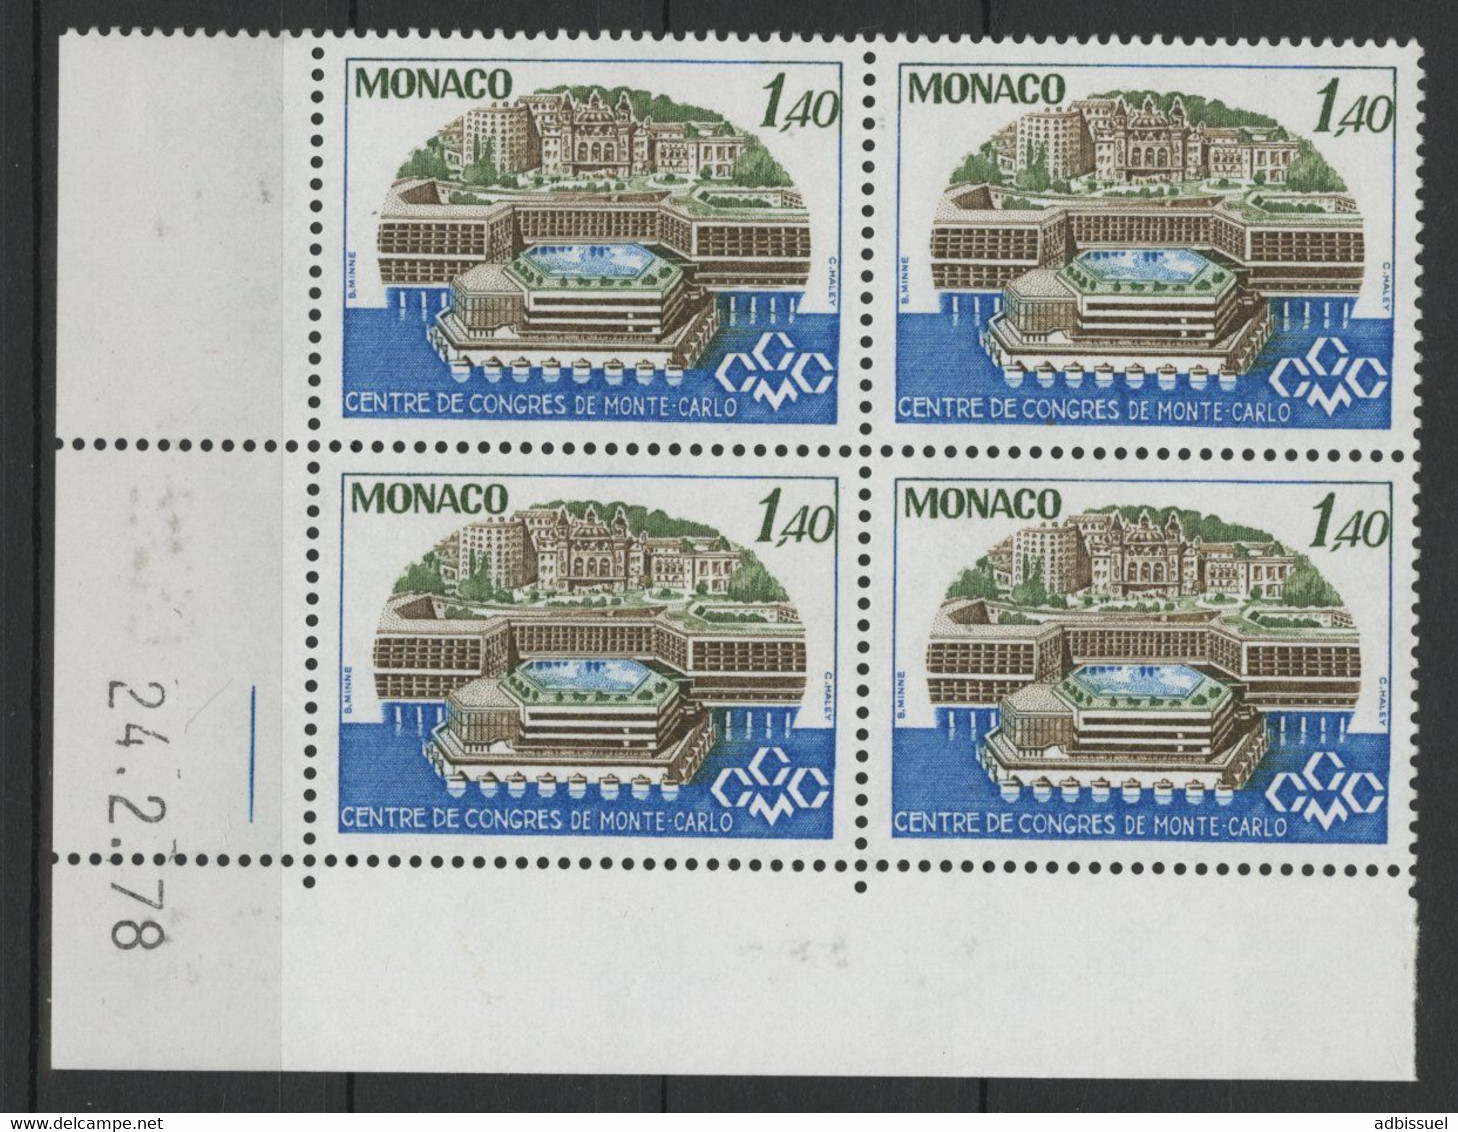 MONACO N° 1137 BLOC DE QUATRE Neufs ** (MNH) AVEC COIN DATE 24/2/78 - Unused Stamps